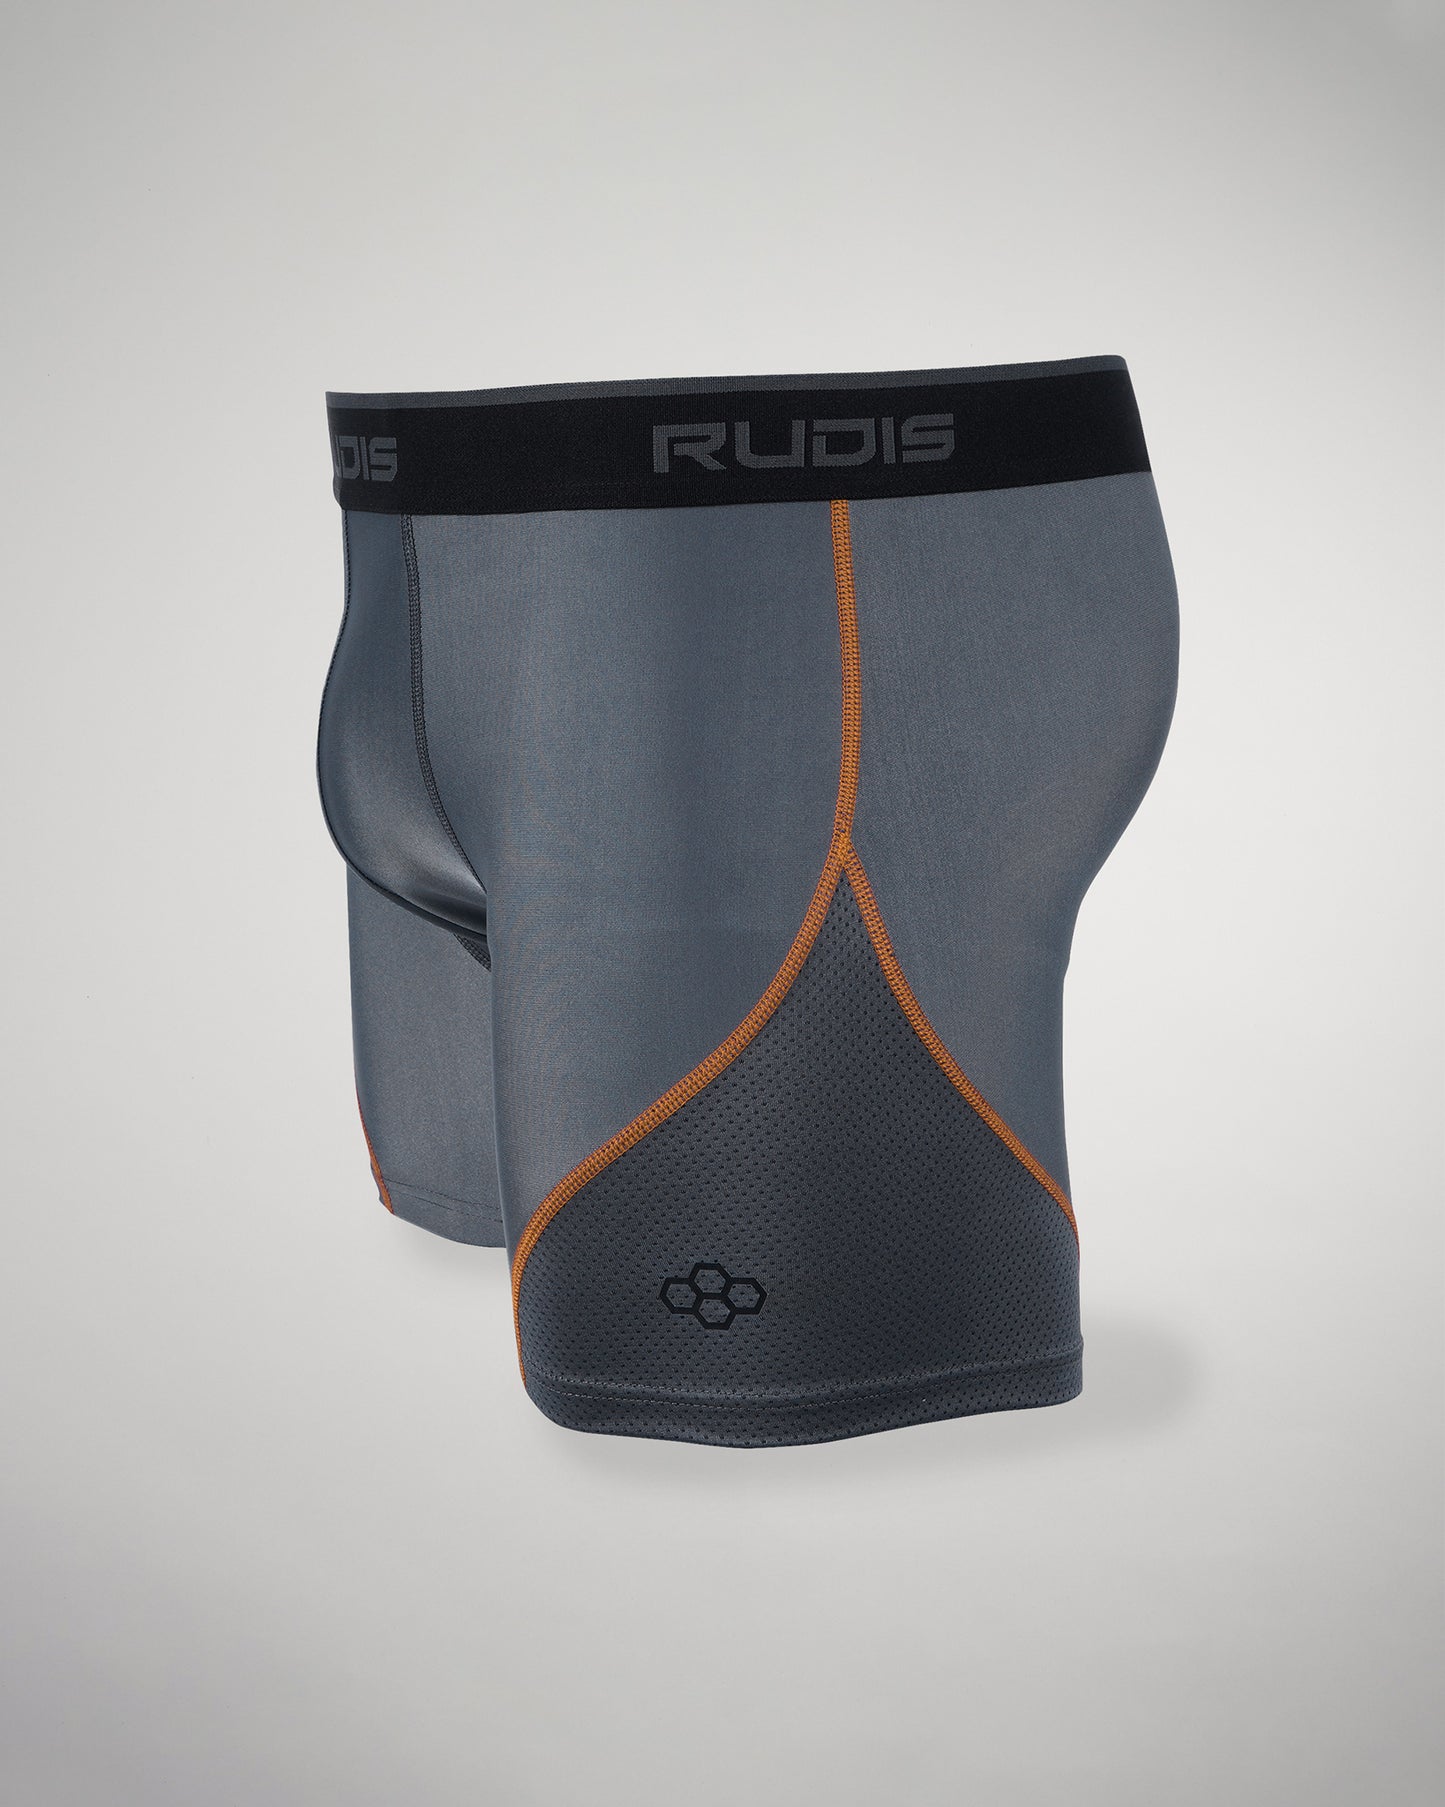 RUDIS Essential Gray/Orange Adult Boxer Brief